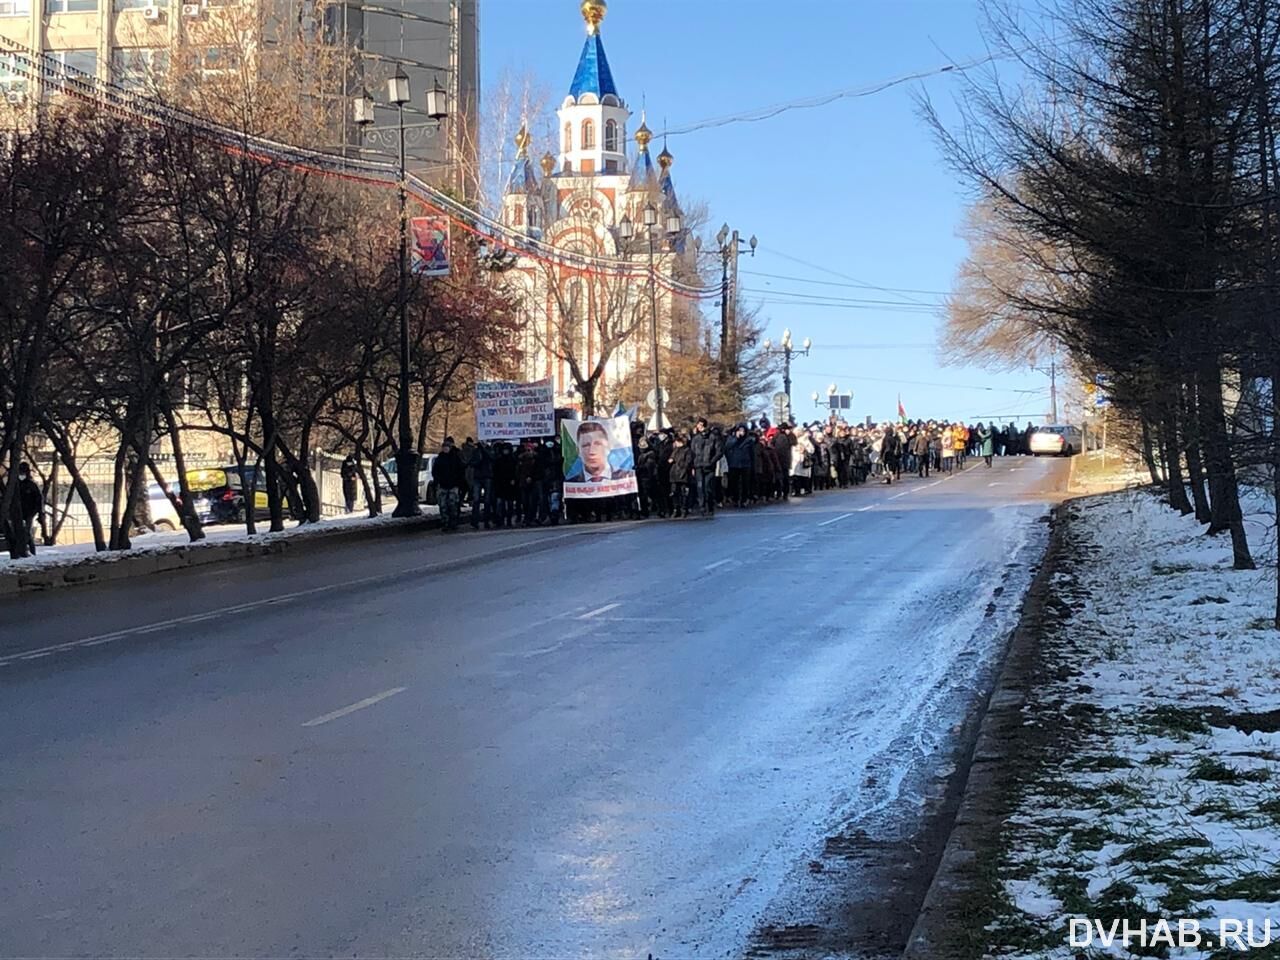 Новыми задержаниями отмечен традиционный субботний митинг в Хабаровске